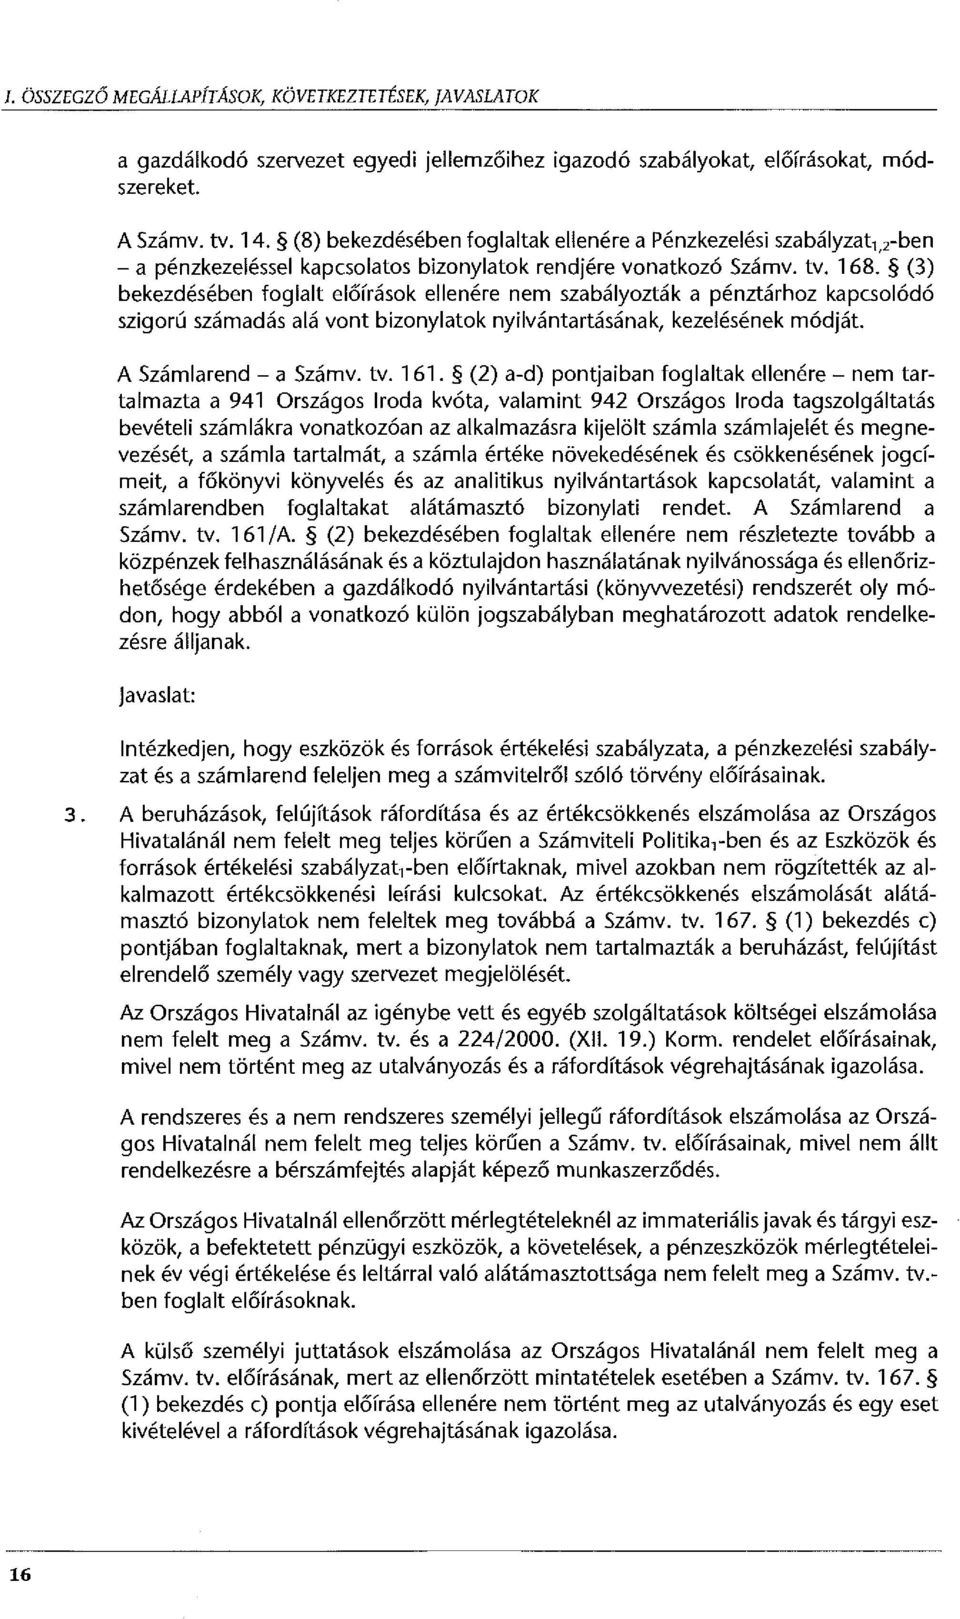 (3) bekezdésében foglalt előírások ellenére nem szabályozták a pénztárhoz kapcsolódó szigorú számadás alá vont bizonylatok nyilvántartásának, kezelésének módját. A Számlarend - a Számv. tv. 161.